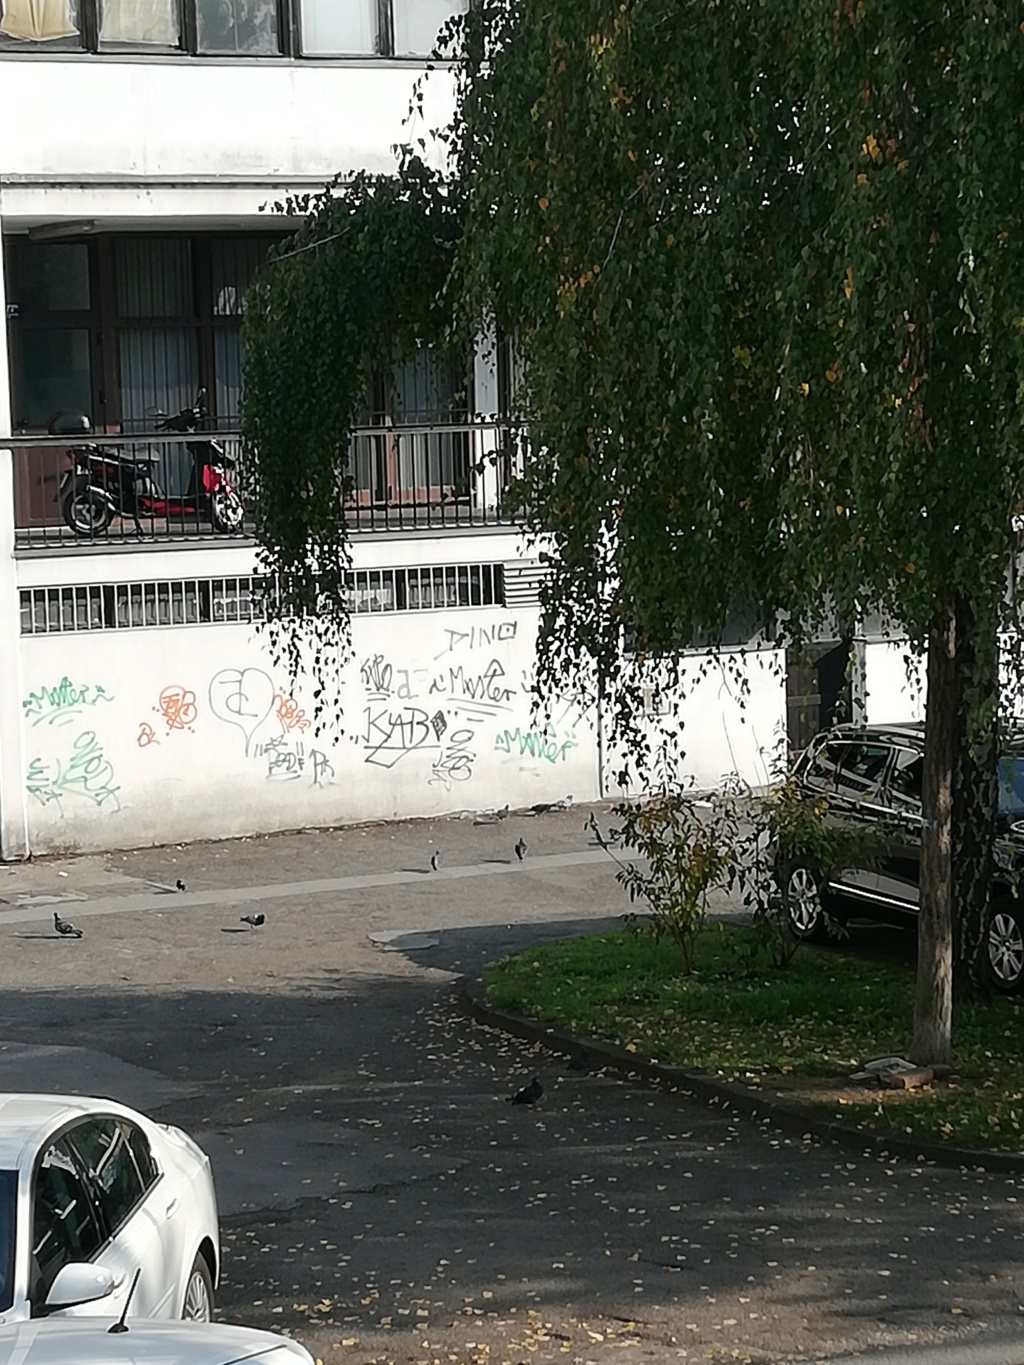 Senfov stranacki kolega naredio da se ukloni mural posvecen braniteljima i Vukovaru.Prosvjednici se okupljaju.Cekaju HEP-ovu dozvolu. Img_1410